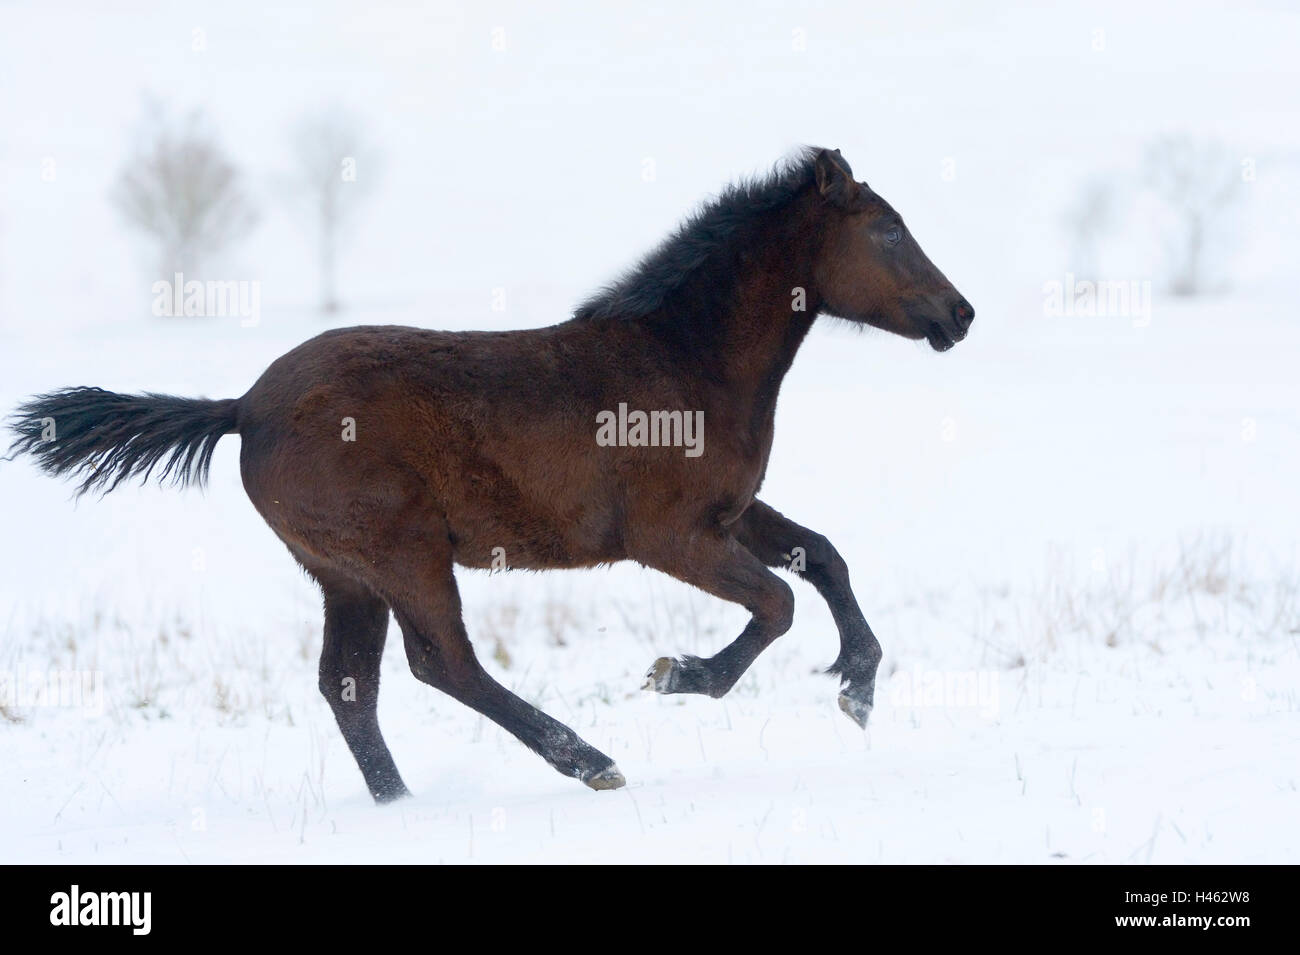 Connemara pony foal in snow Stock Photo